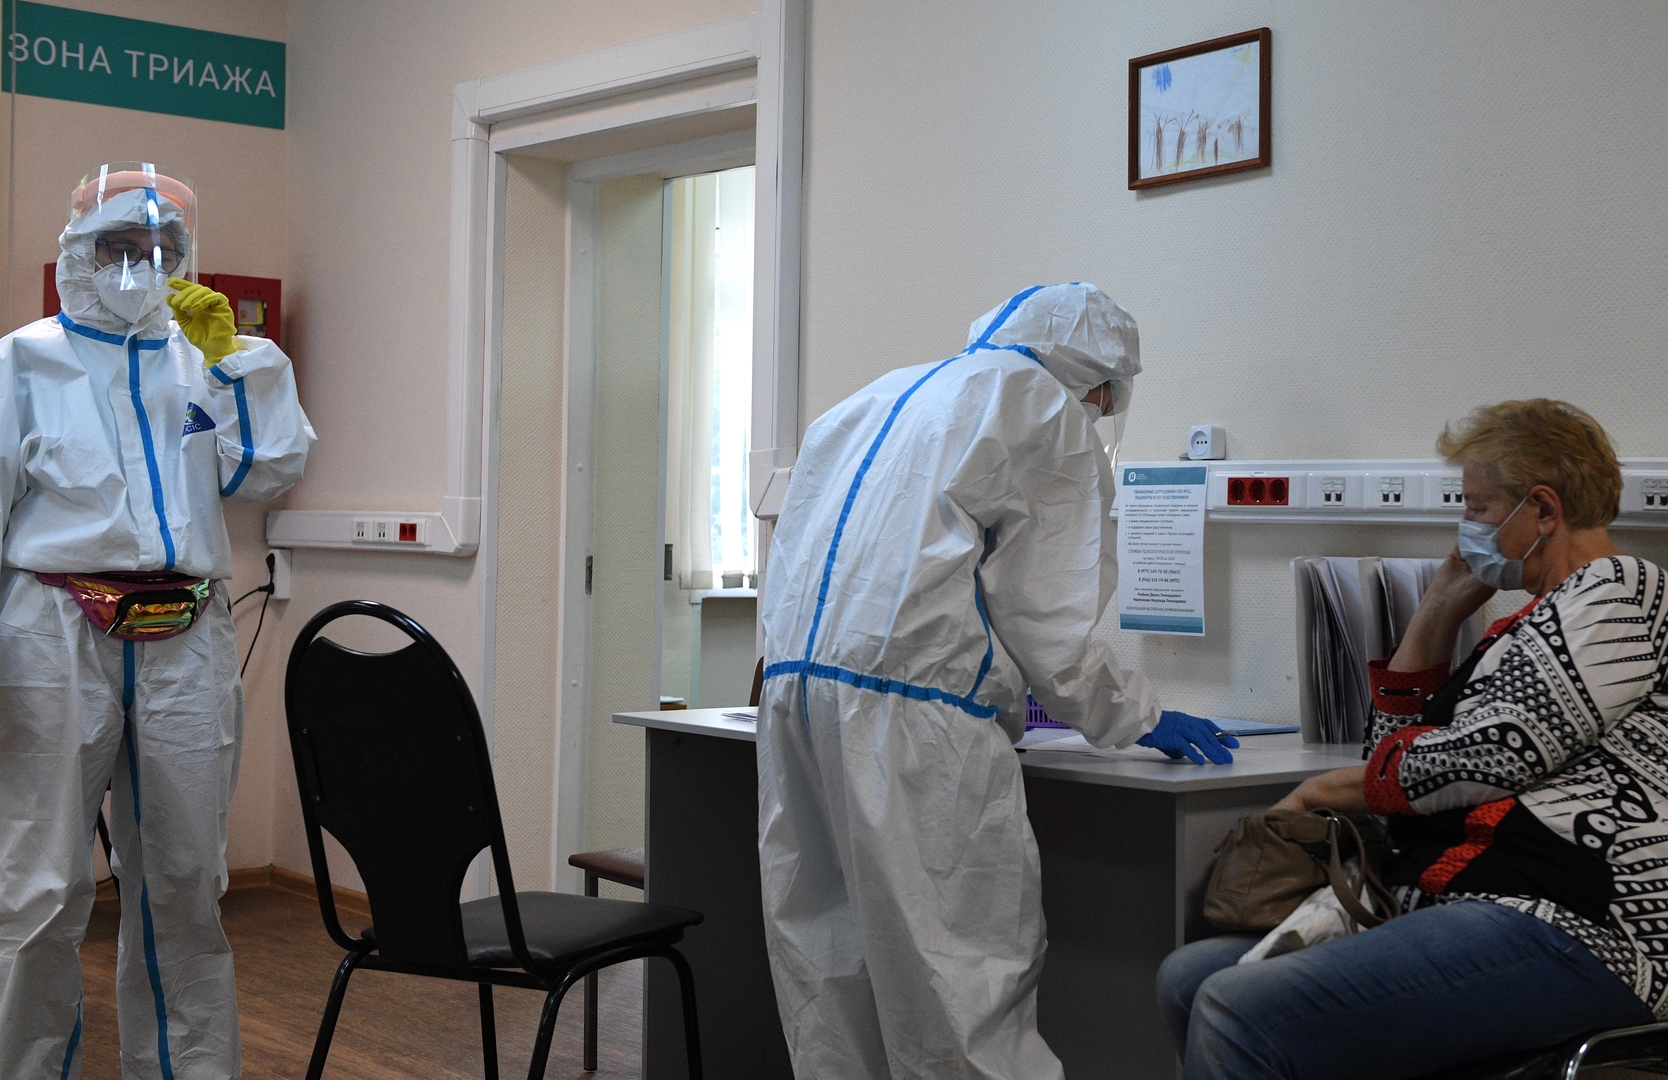 عالم فيروسات يتوقع أن تكون الموجة الثانية لكورونا في روسيا أكثر شدة